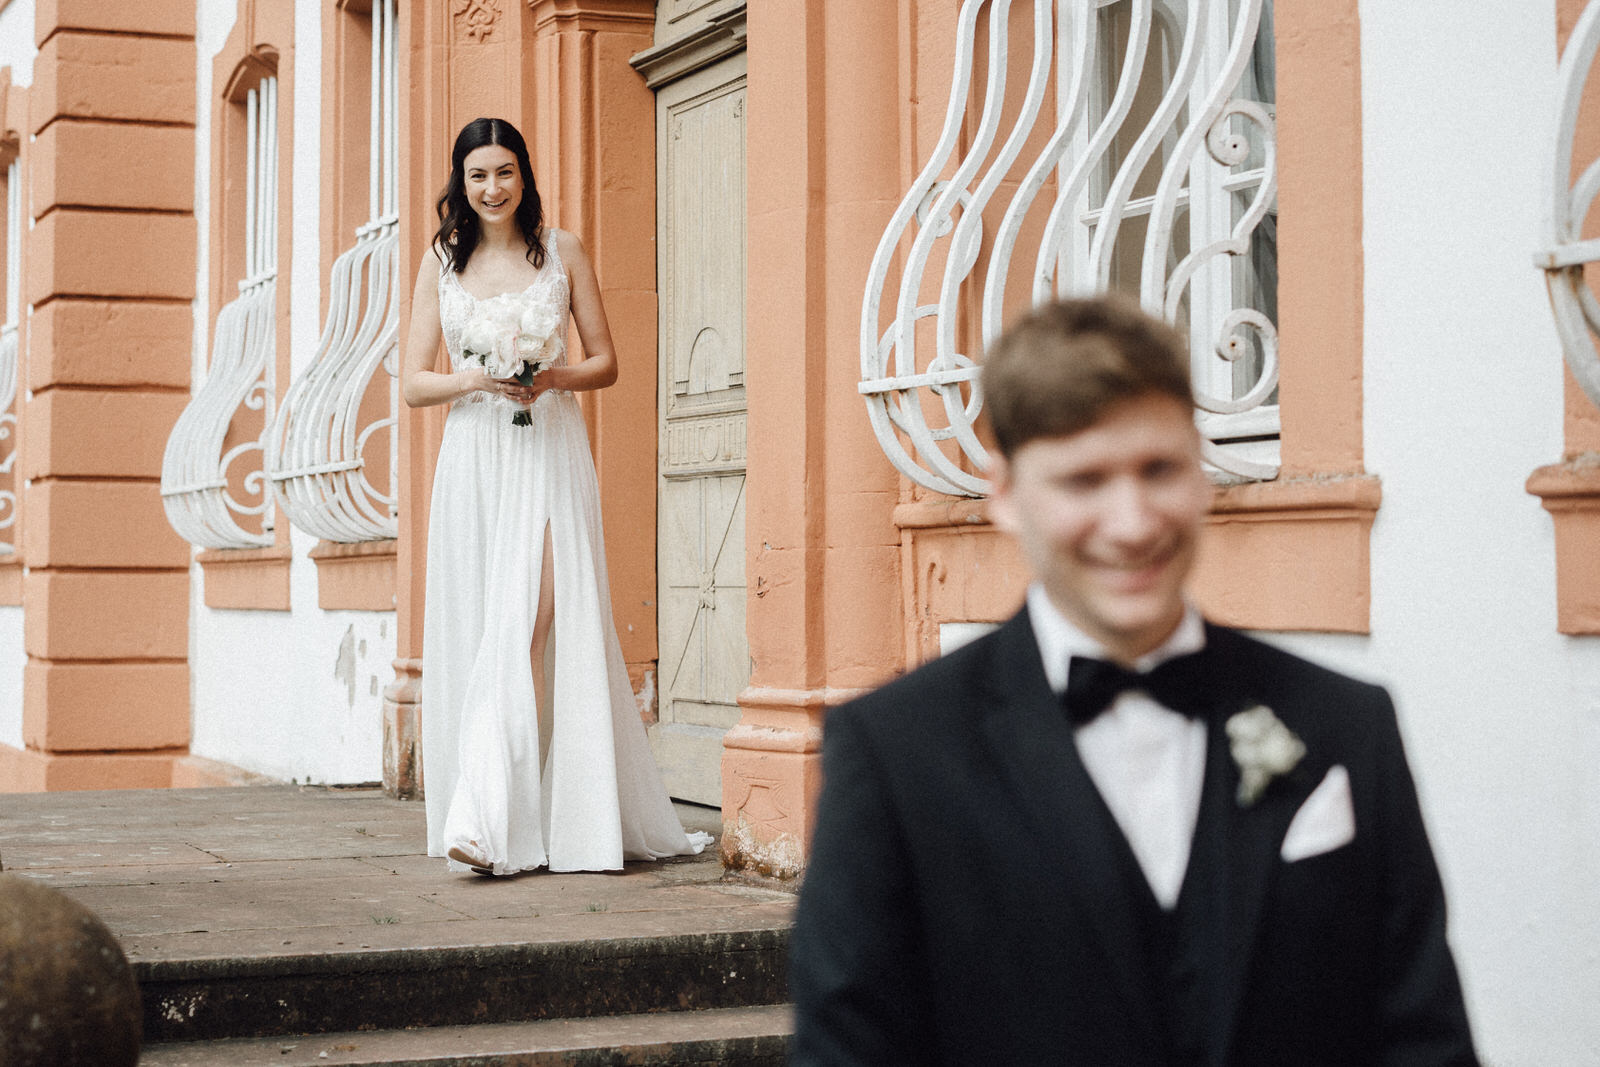 Hochzeit im Schloss Münchweiler Hochzeitslocation im Saarland - Hochzeitsfotograf Saarland & Pfalz Andreas Heu